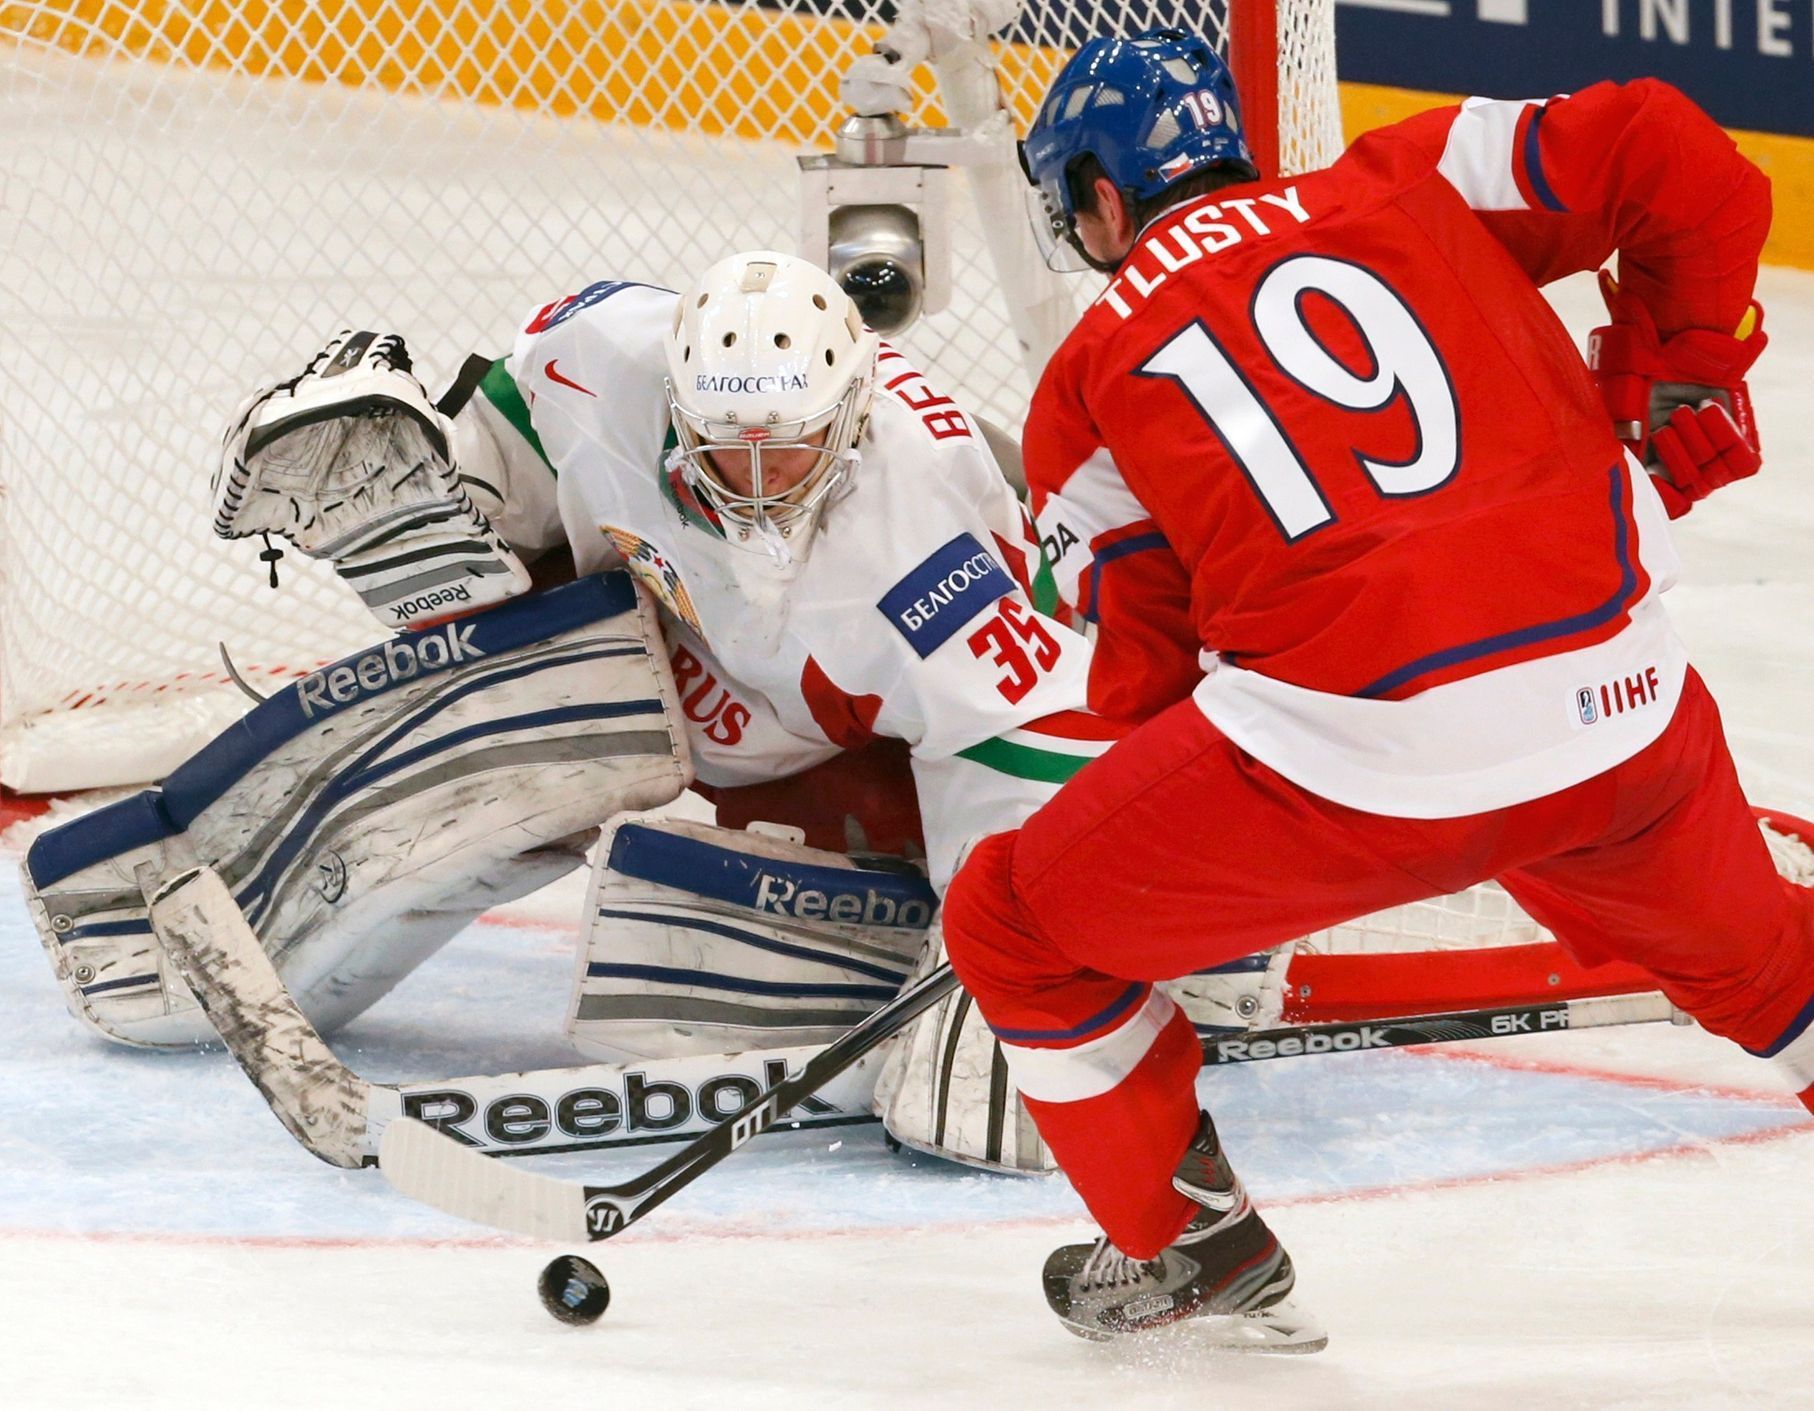 MS v hokeji 2013, Česko - Bělorusko: Jiří Tlustý - Vitalij Belinskij